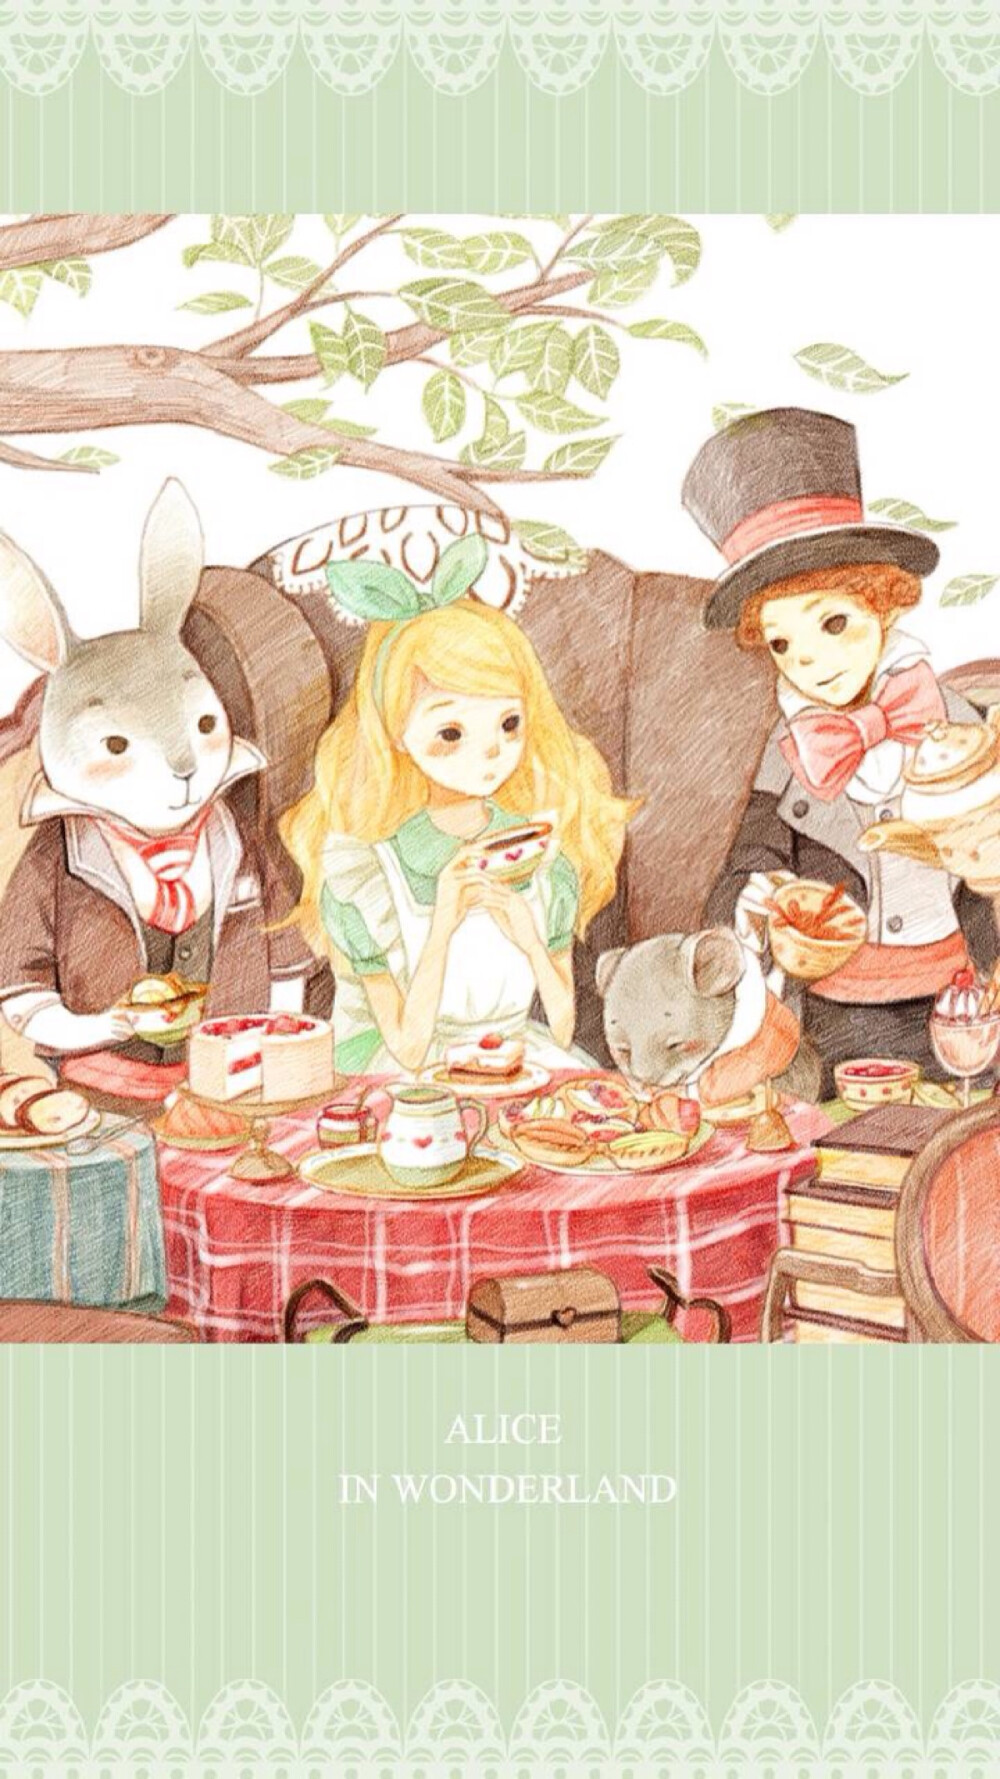 (*)爱丽丝梦游仙境,兔子的下午茶time,,彩铅绘画,壁纸,手帐素材